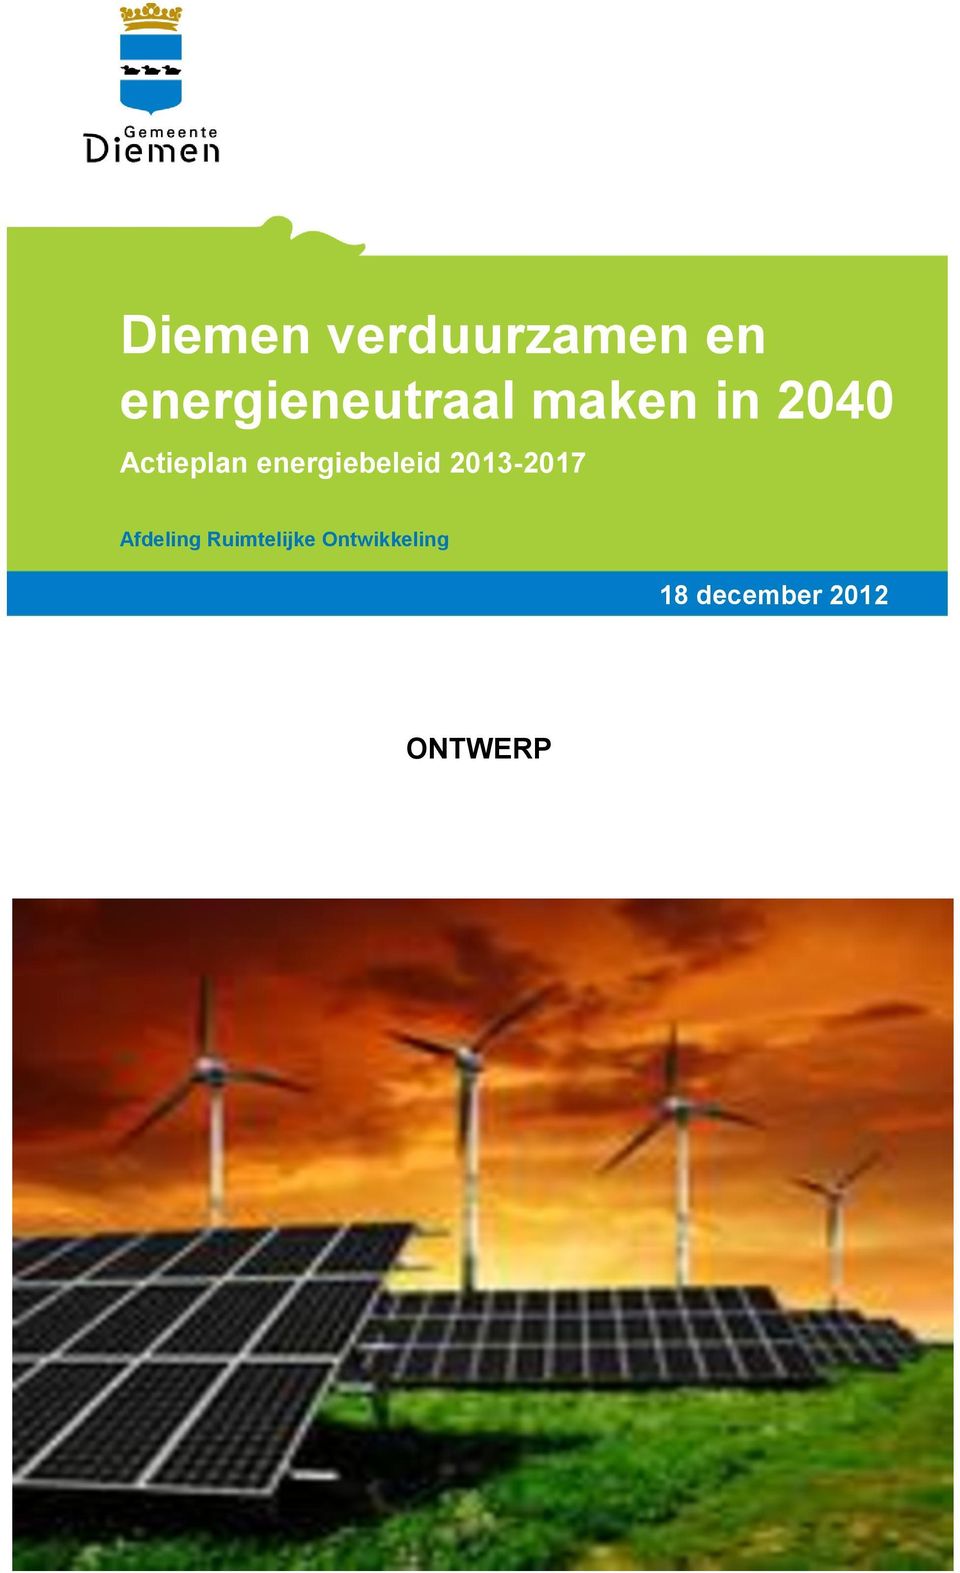 Actieplan energiebeleid 2013-2017